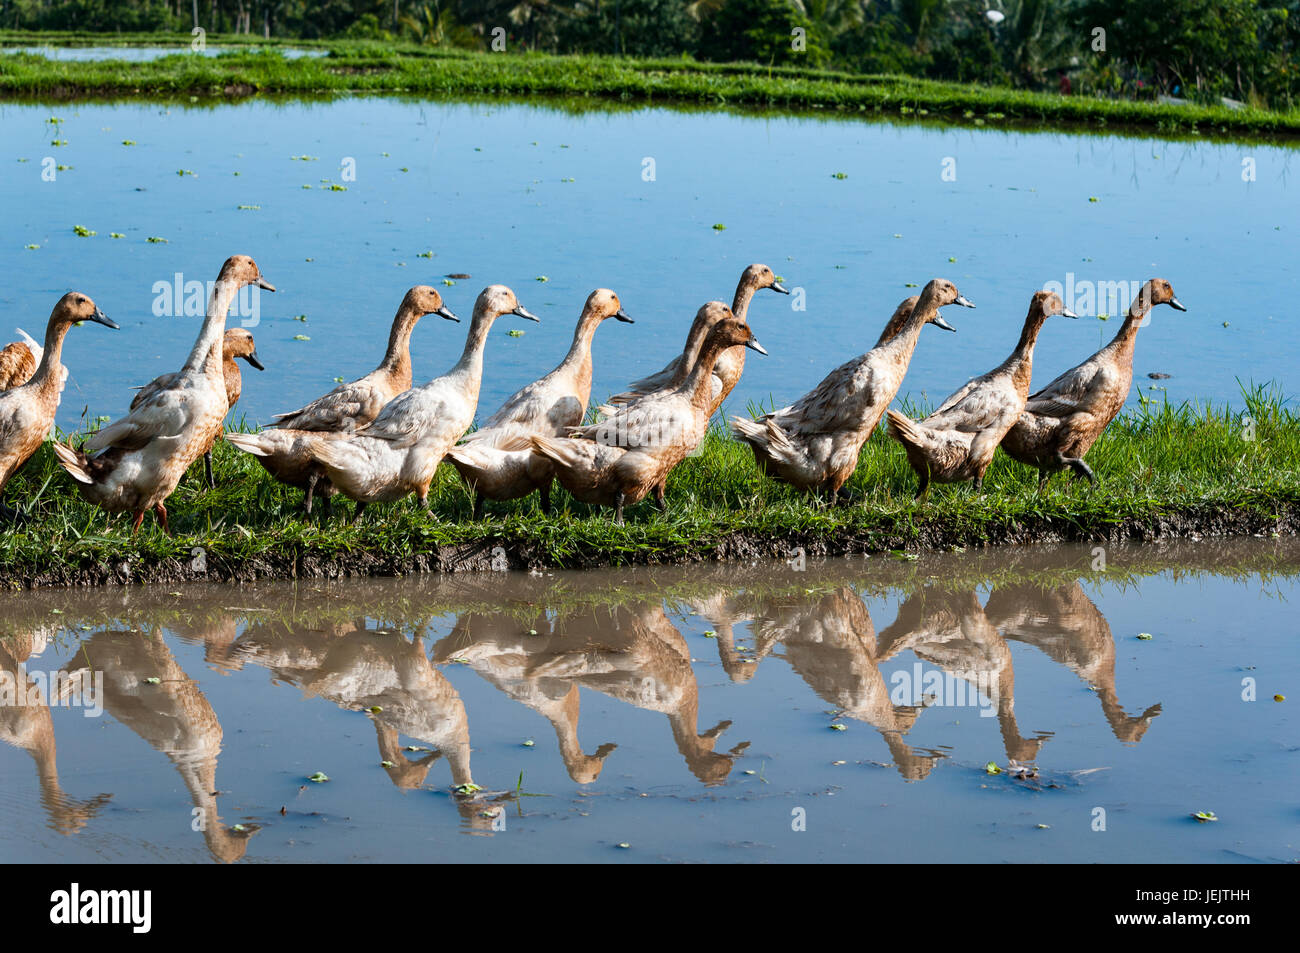 Ducks walking in the rice fields in Bali Stock Photo